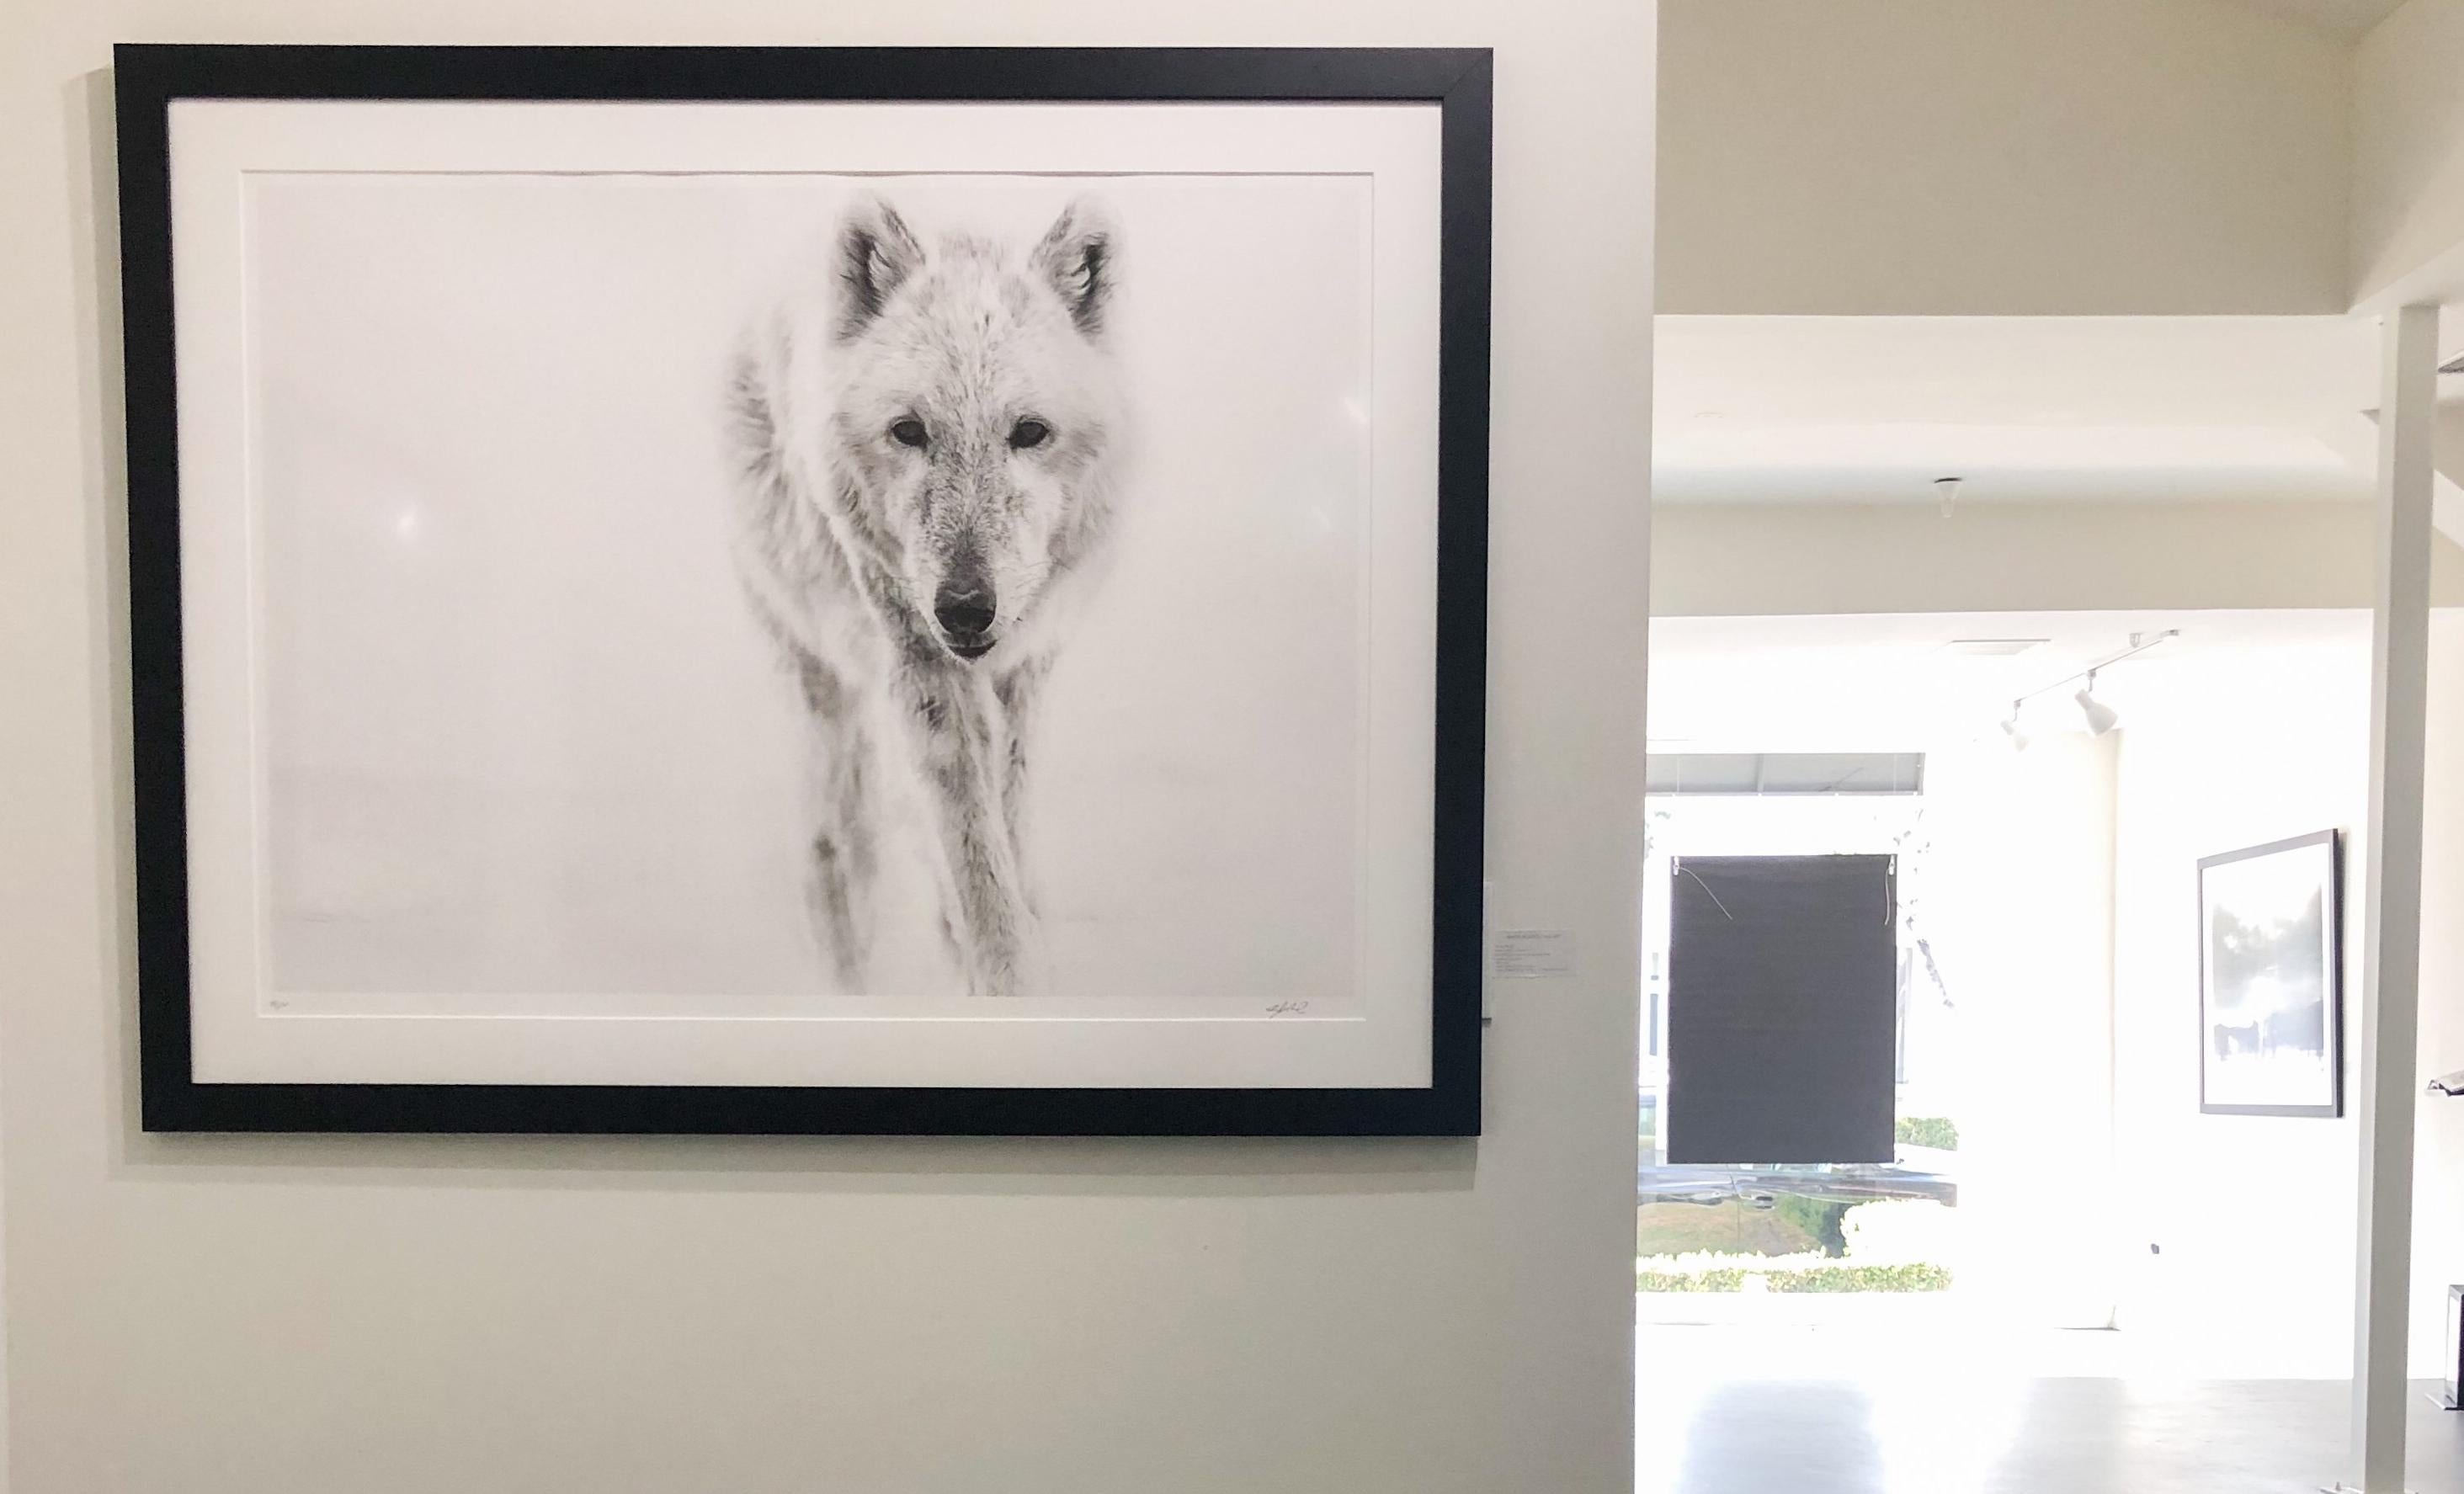 Voici une photographie contemporaine en noir et blanc d'un loup arctique, réalisée par le photographe animalier Shane Russeck.
Edition de 50 exemplaires. 
Signé par et numéroté
Imprimé sur du papier d'archives avec des encres d'archives.